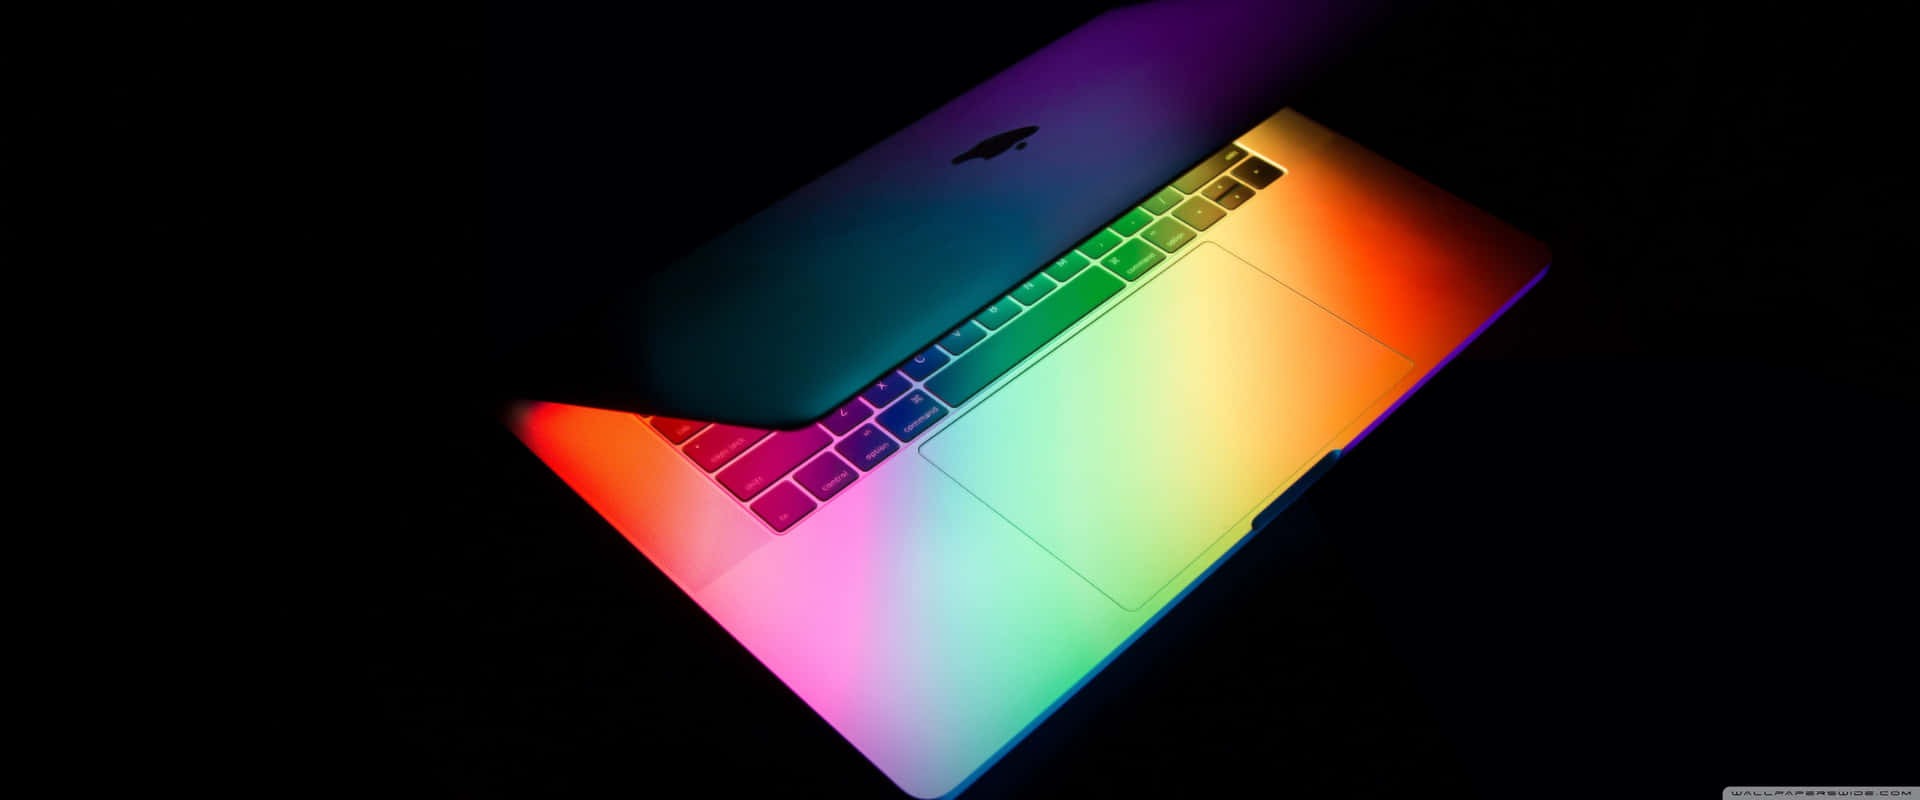 Semuestra Un Macbook Pro De Colores Arcoíris En La Oscuridad. Fondo de pantalla